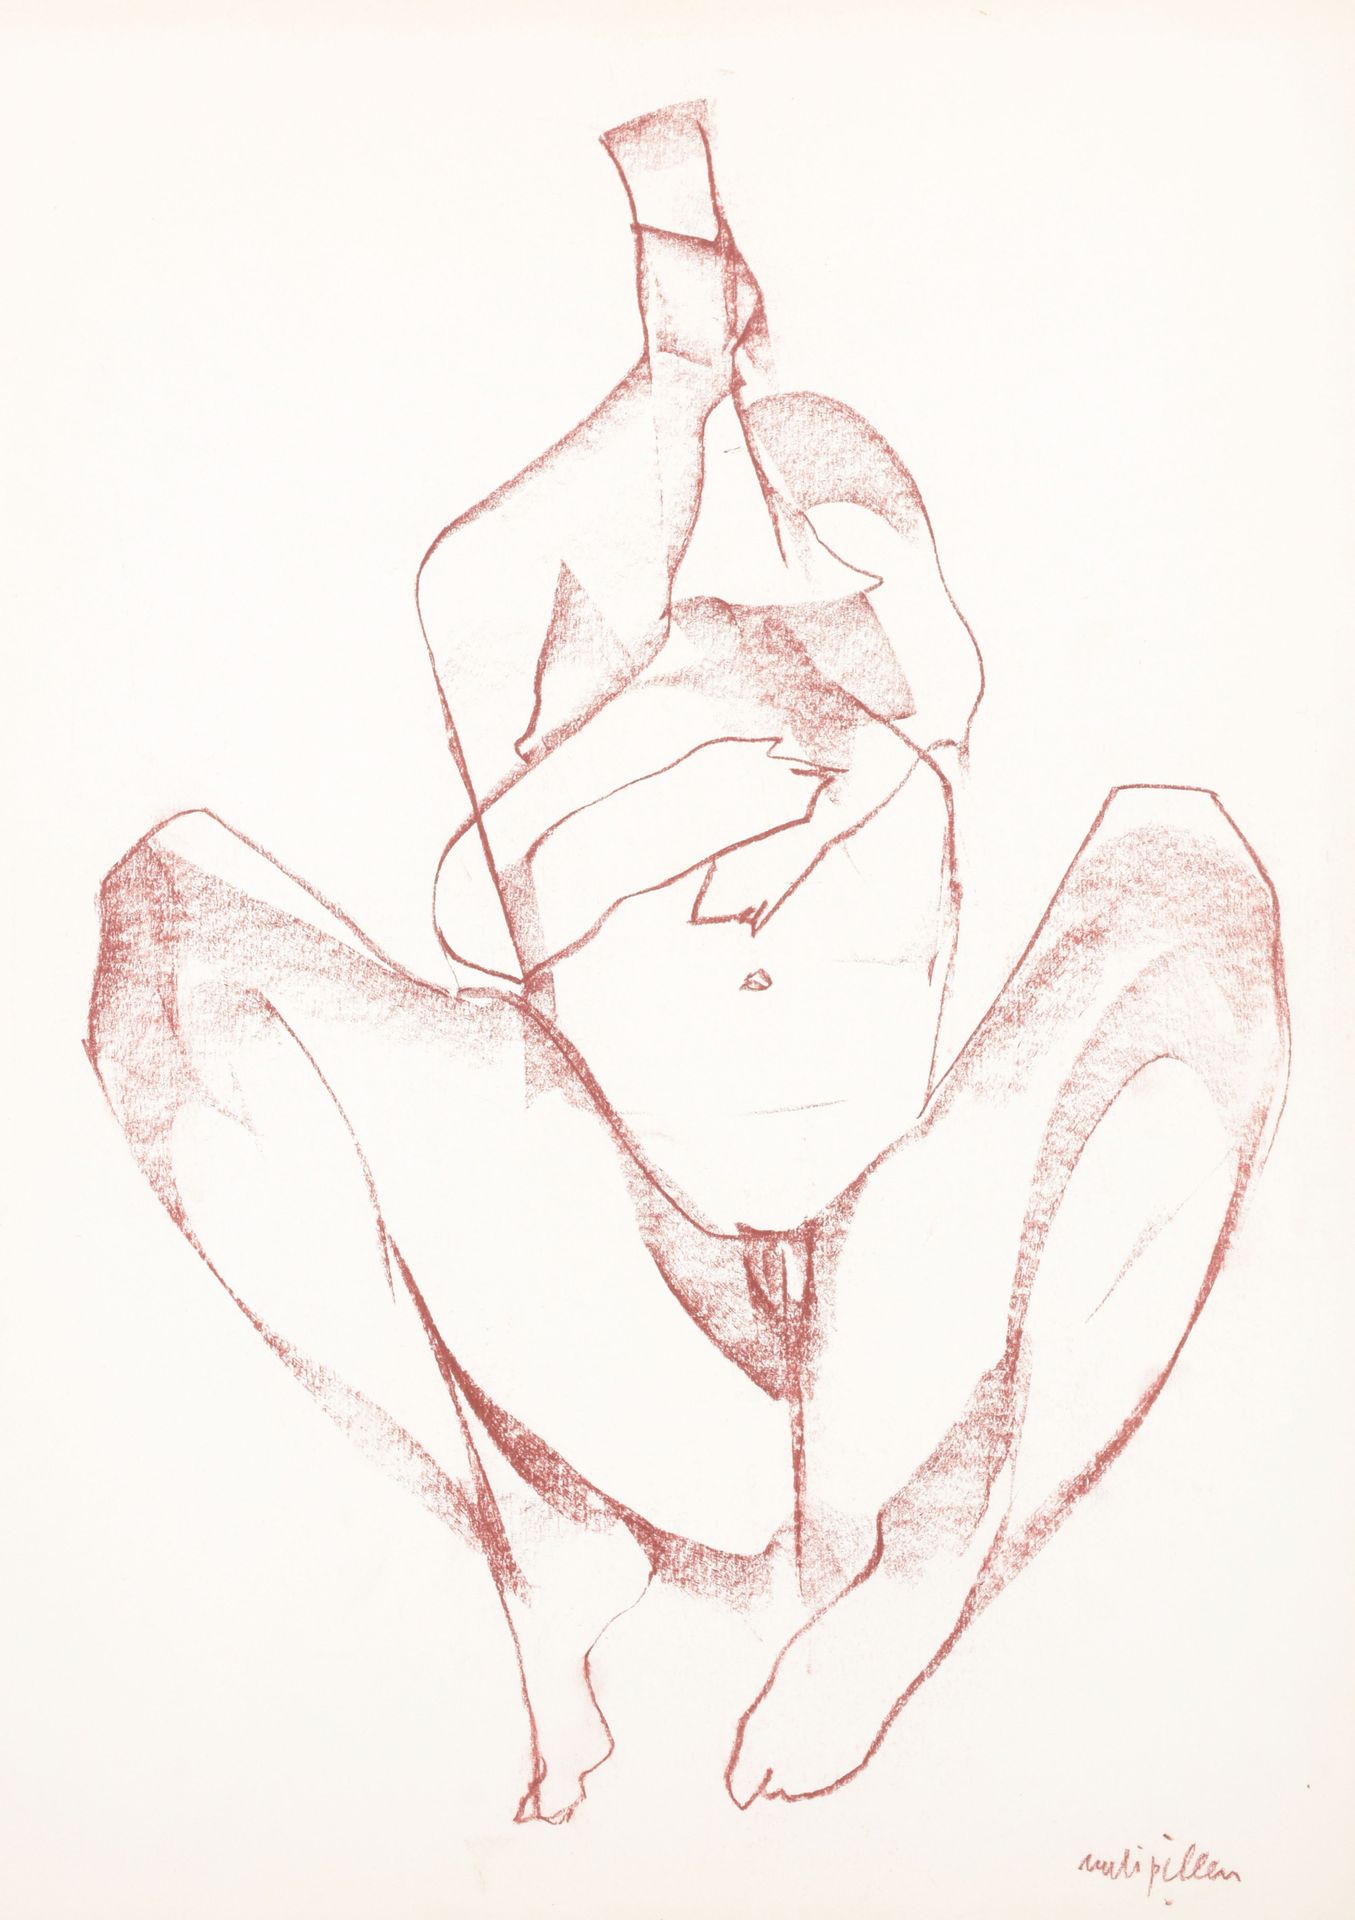 PILLEN, Rudi (1931-2014) Verzameling van 5 tekeningen met figuren van vrouwen

G&hellip;